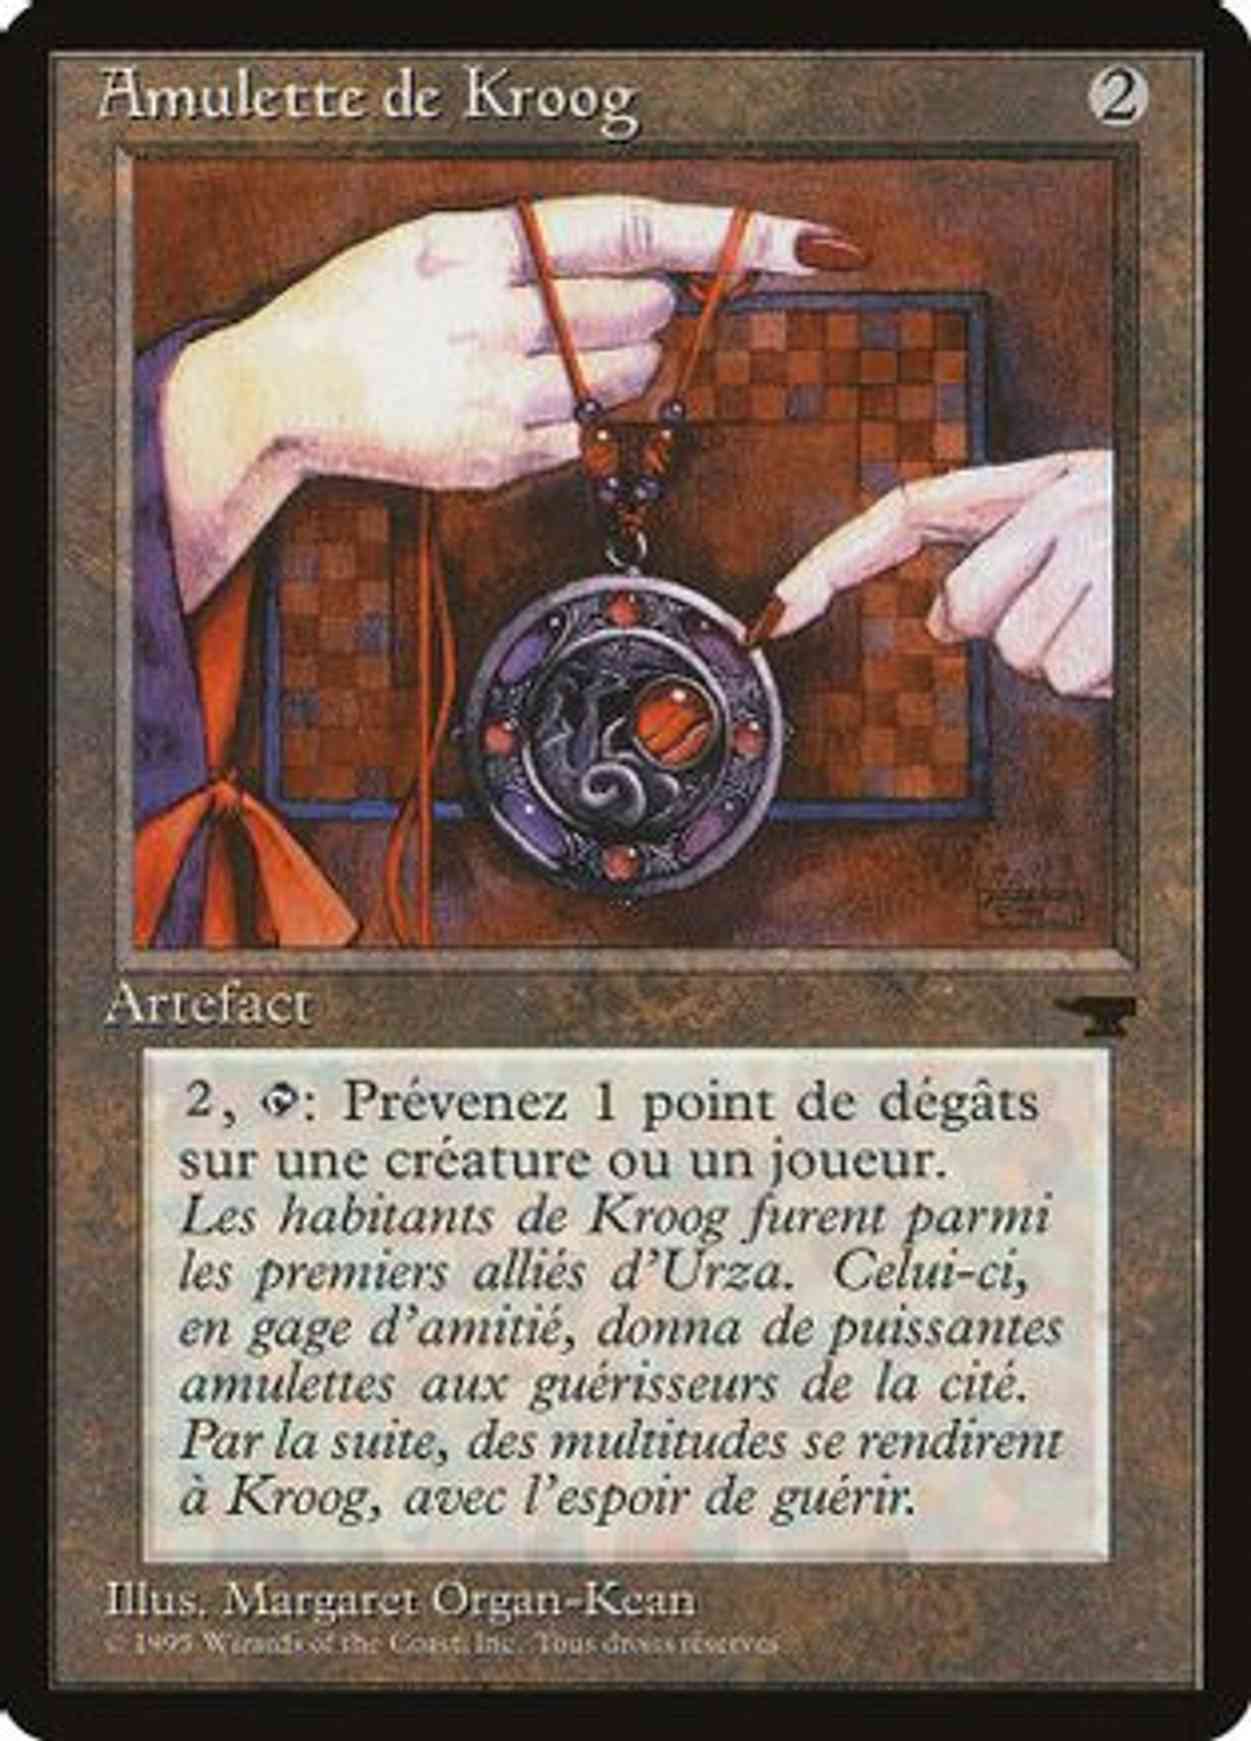 Amulet of Kroog (French) - "Amulette de Kroog" magic card front